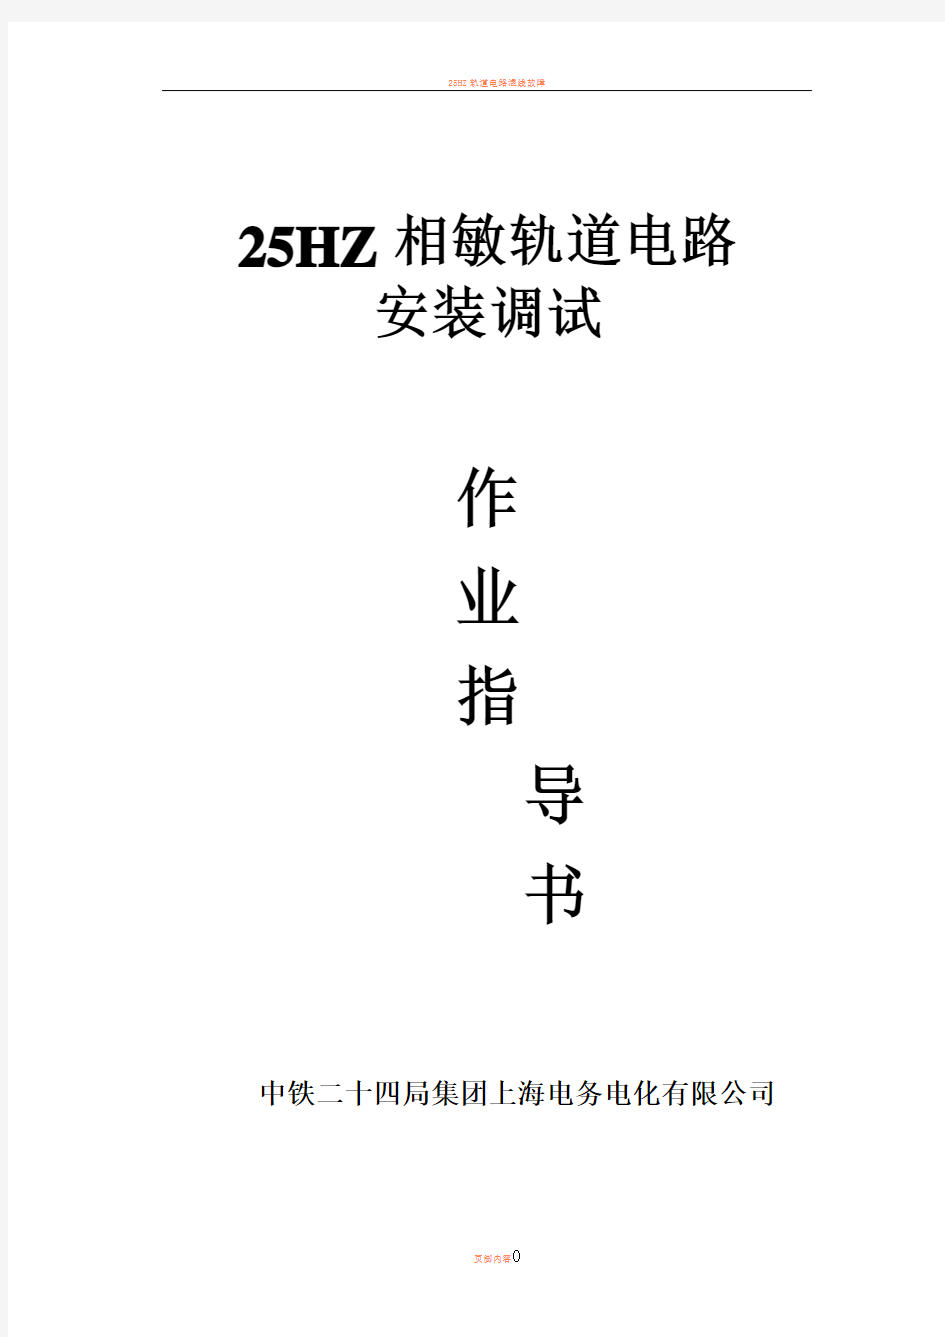 25HZ轨道电路调整作业指导书